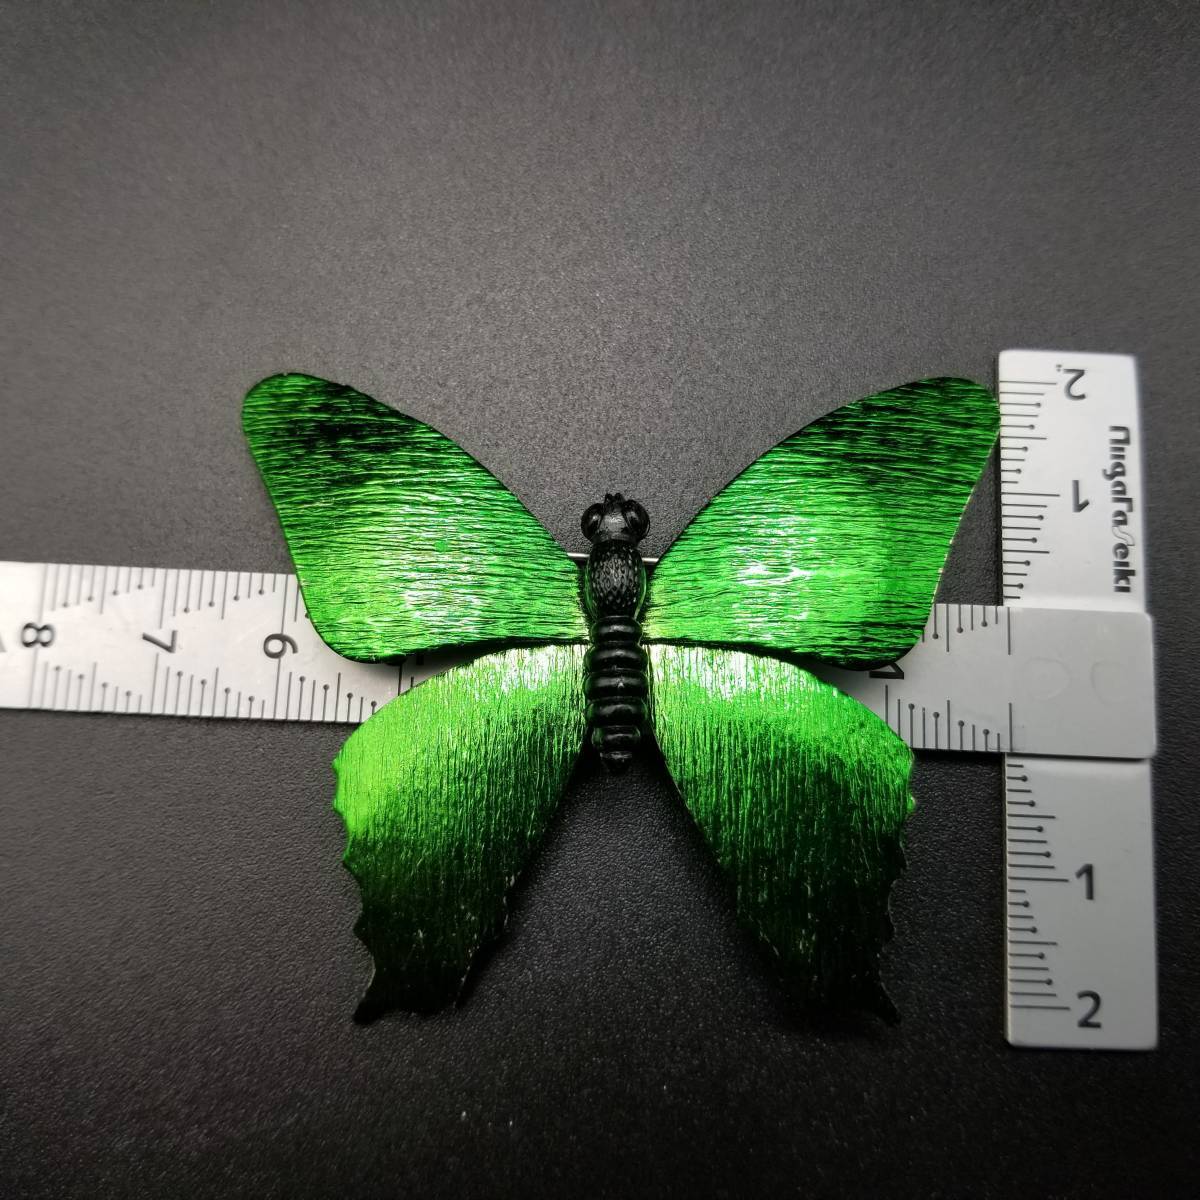 緑の蝶 大ぶり ヴィンテージ ブローチ グリーン 昆虫モチーフ レトロ コスチュームジュエリー 鮮やか 存在感 YDB4_画像3